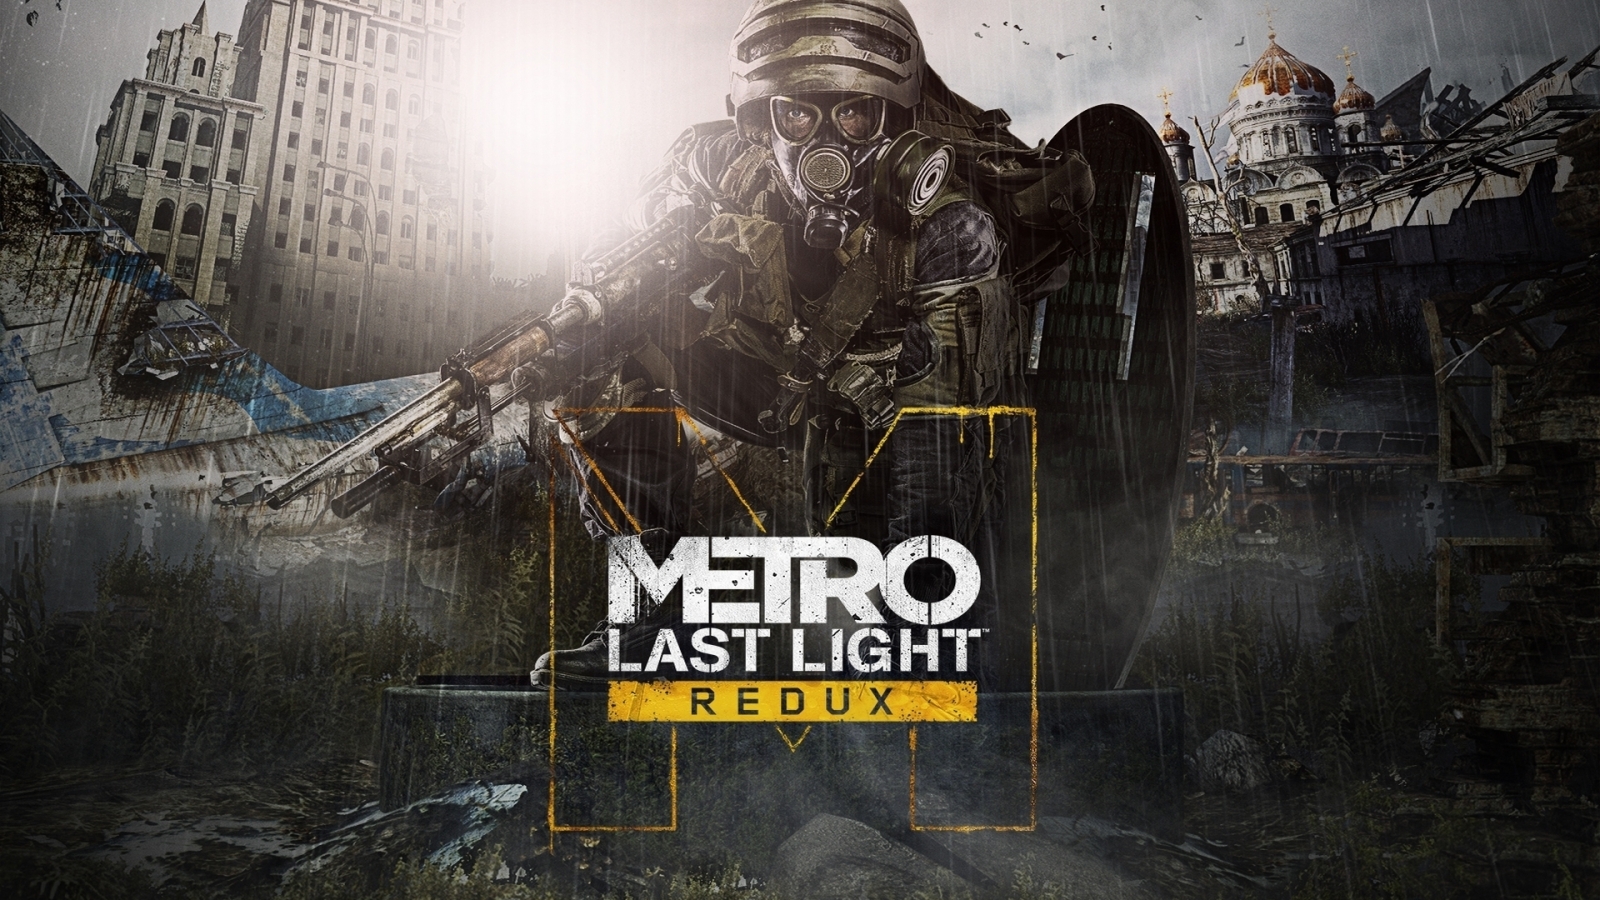 Metro Last Light Redux for 1600 x 900 HDTV resolution